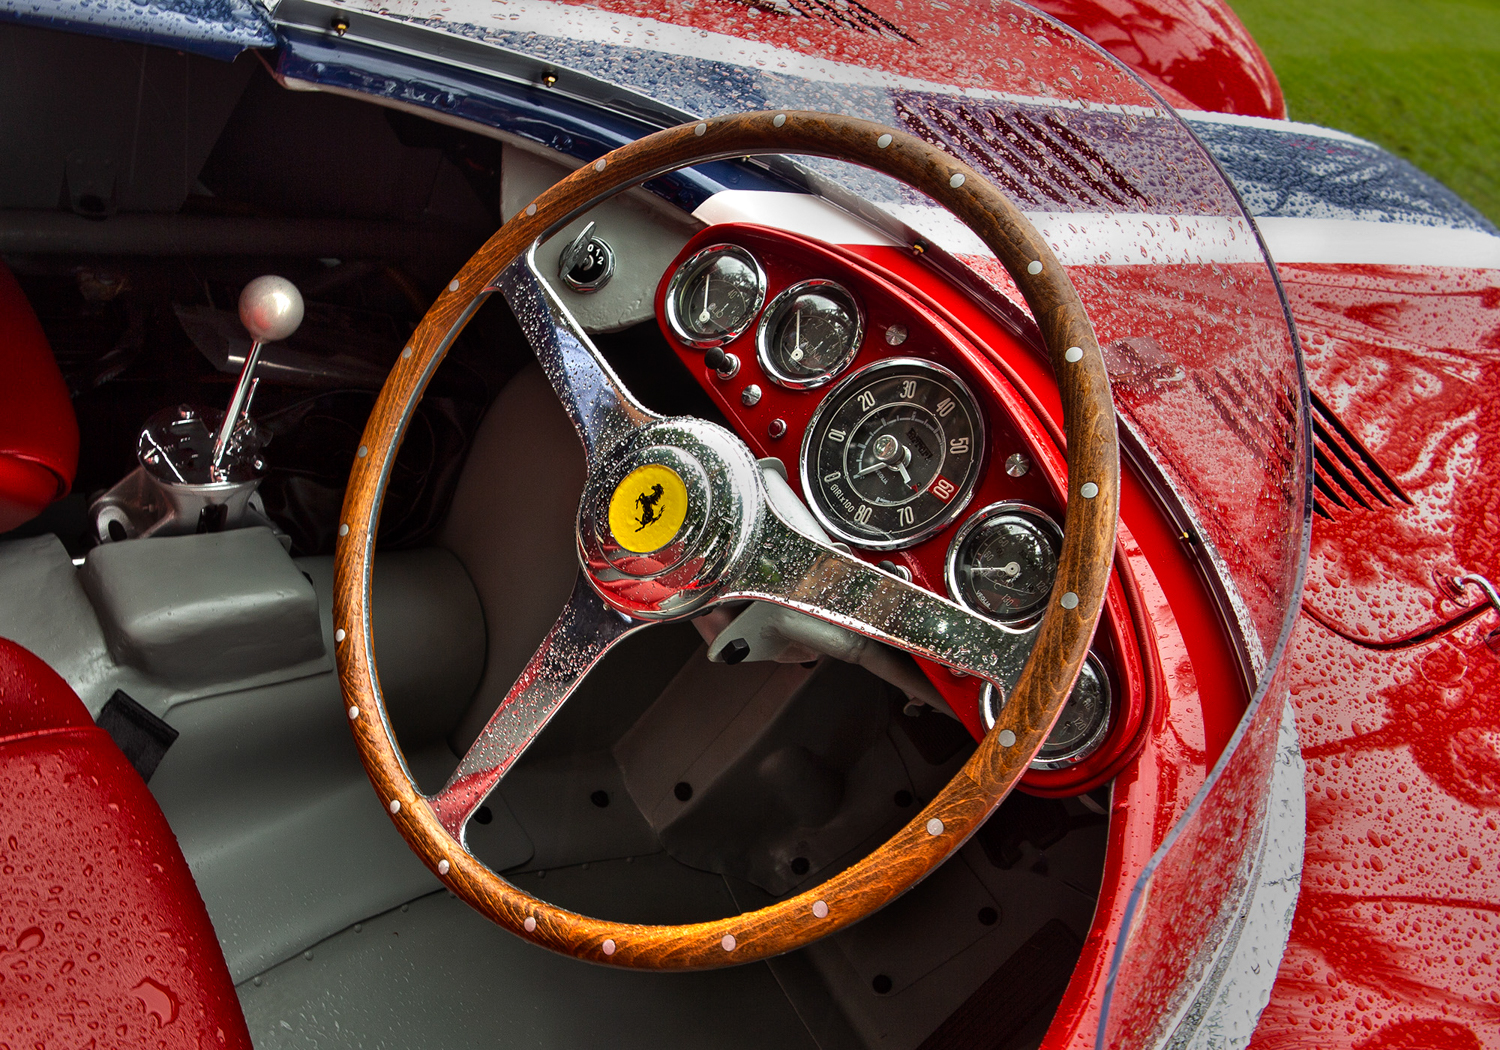 1954 Ferrari 121 LM ser# 0484 LM Chuck Andersen